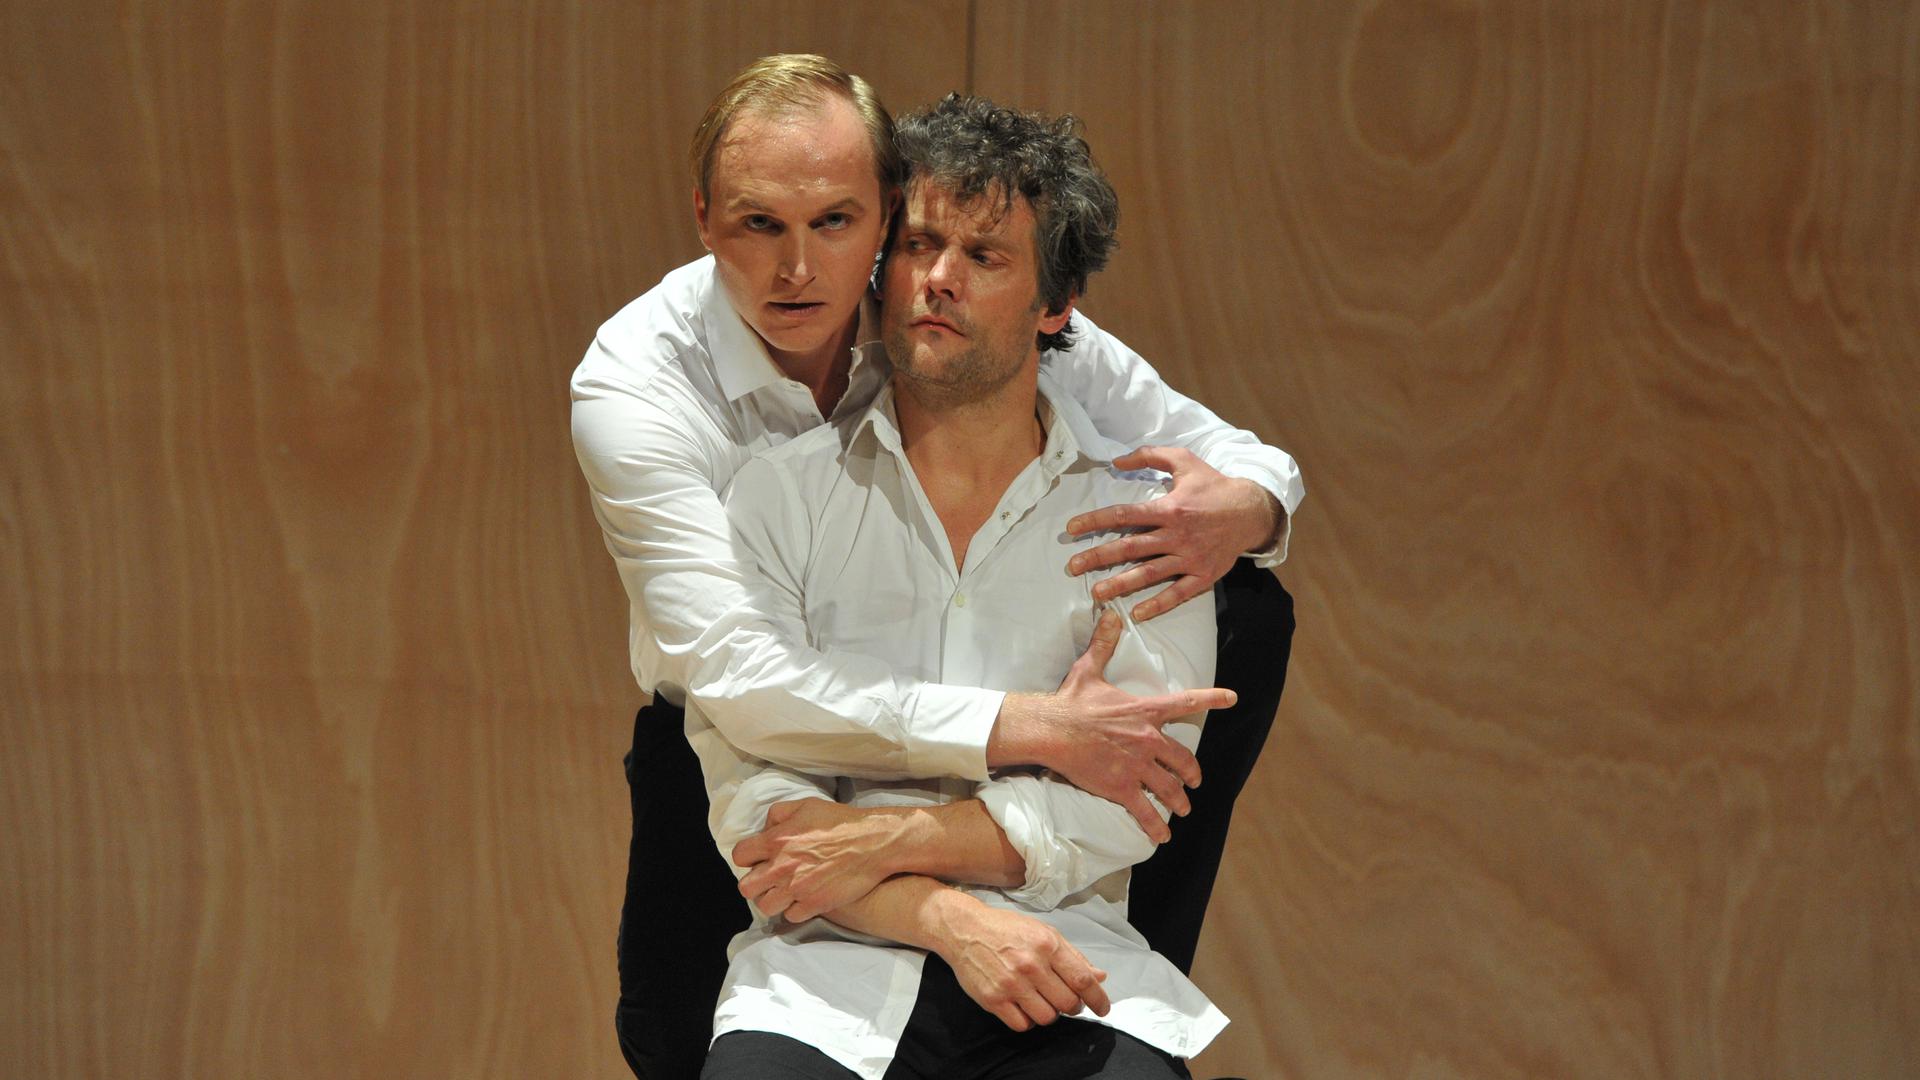 Mephisto (Mattes Herre) und Faust (Sebastian Mirow) in Harald Fuhrmanns Inszenierung von „Faust I“ am Theater Baden-Baden. Foto von der Premiere im September 2012.